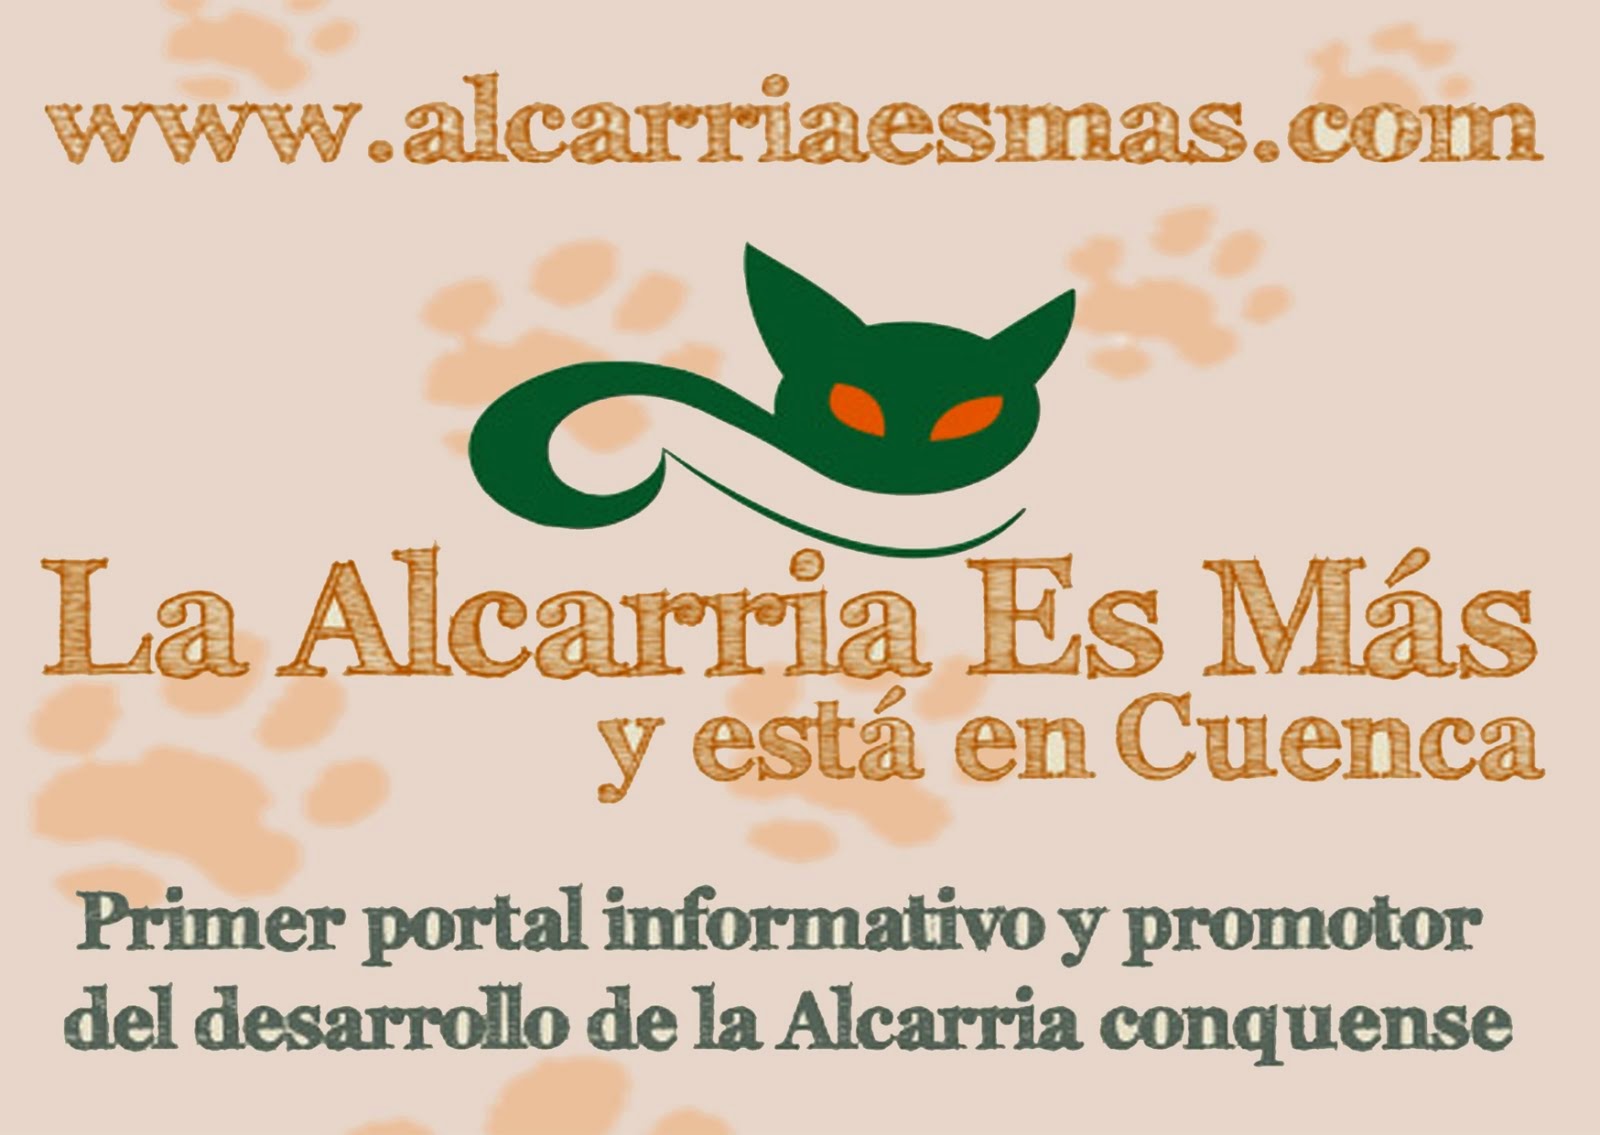 "Alcarria es +"